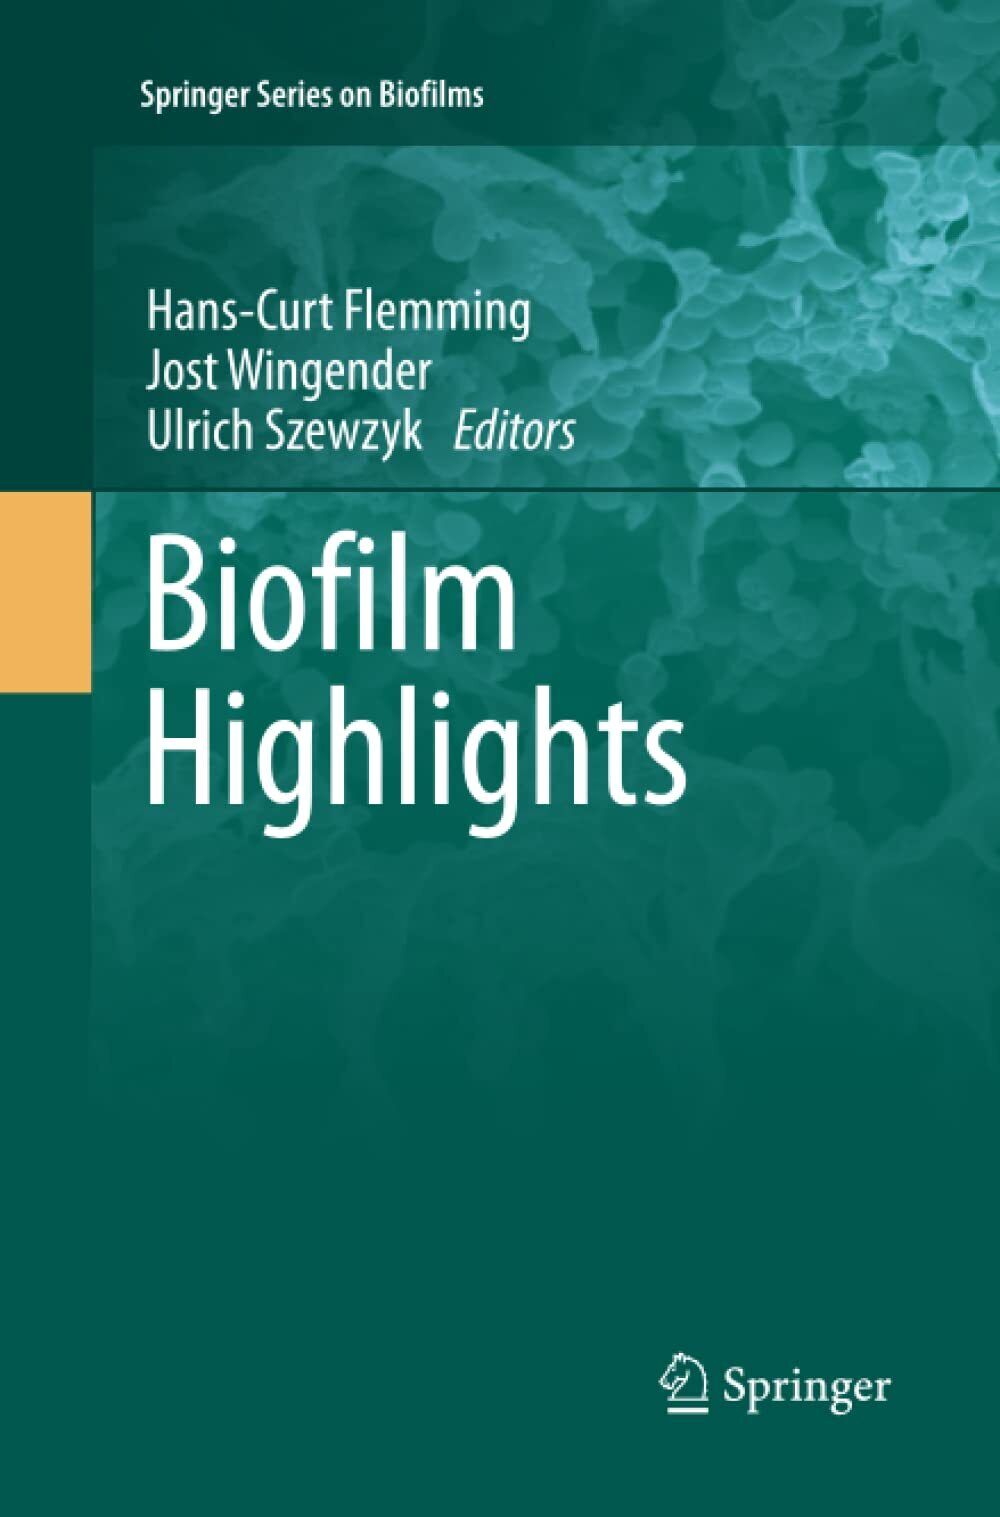 Biofilm Highlights - Hans-Curt Flemming - Springer, 2013